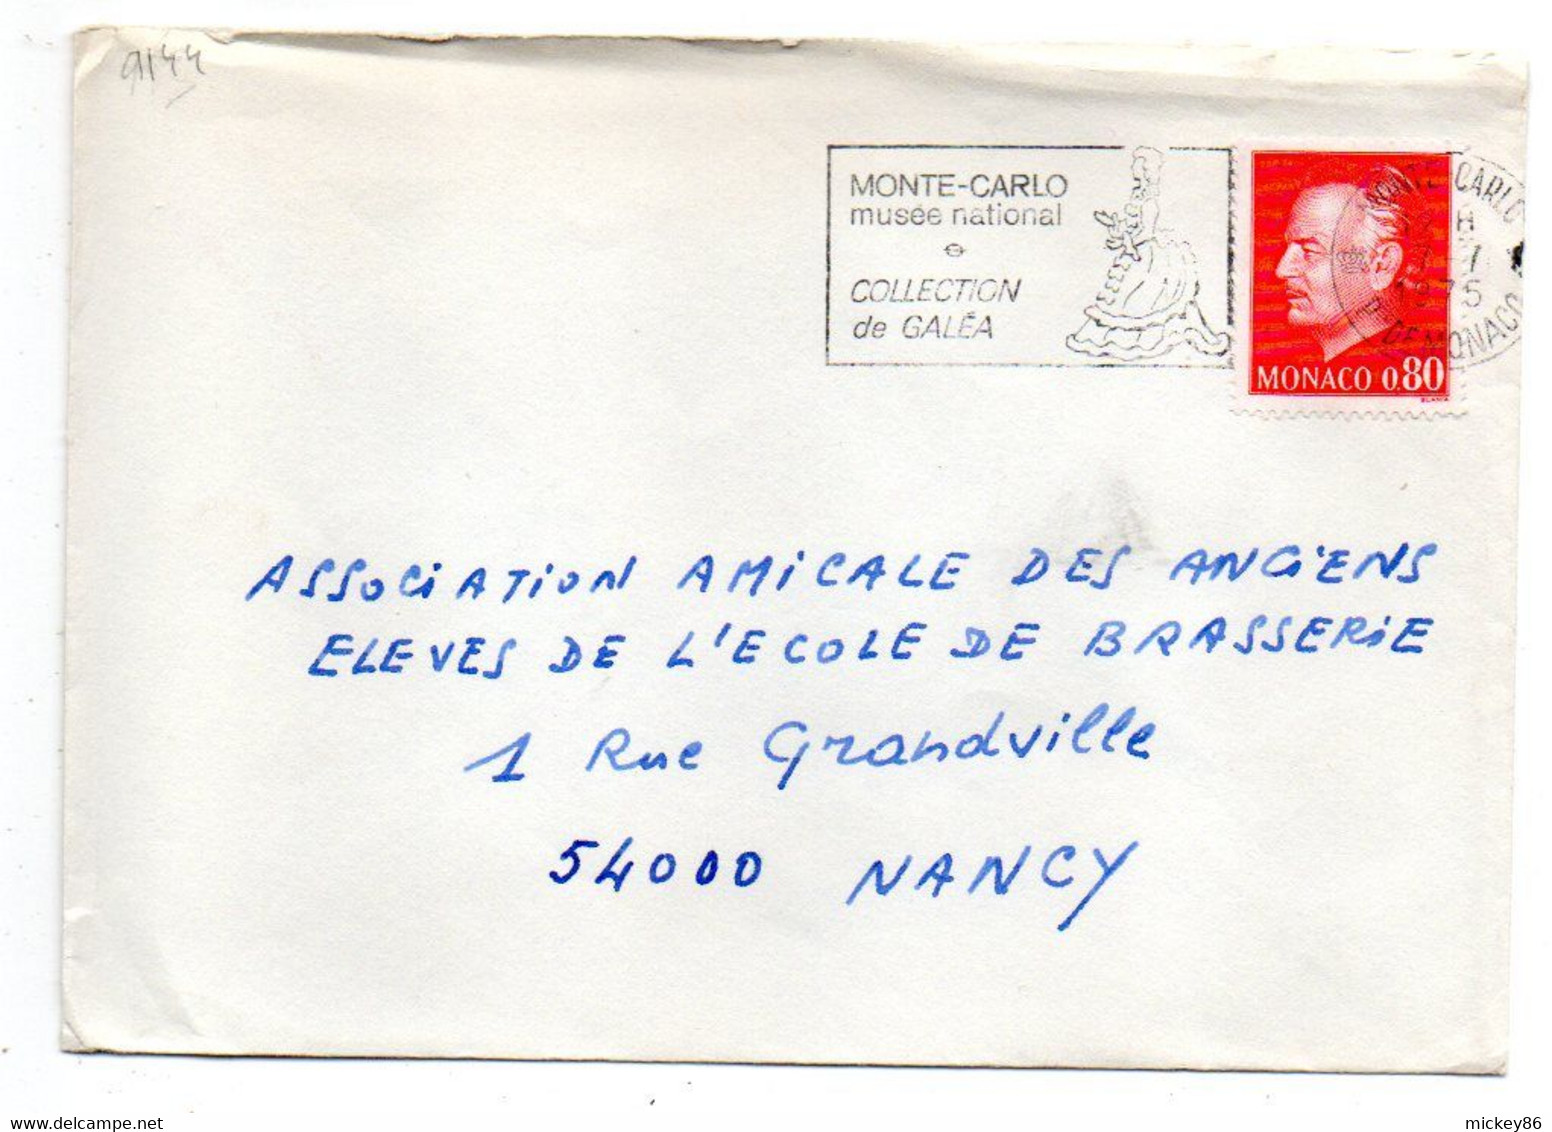 Monaco -1975- Lettre De Monte-Carlo Pour NANCY (France)....tp...cachet  Musée National Et Collec Galéa - Storia Postale